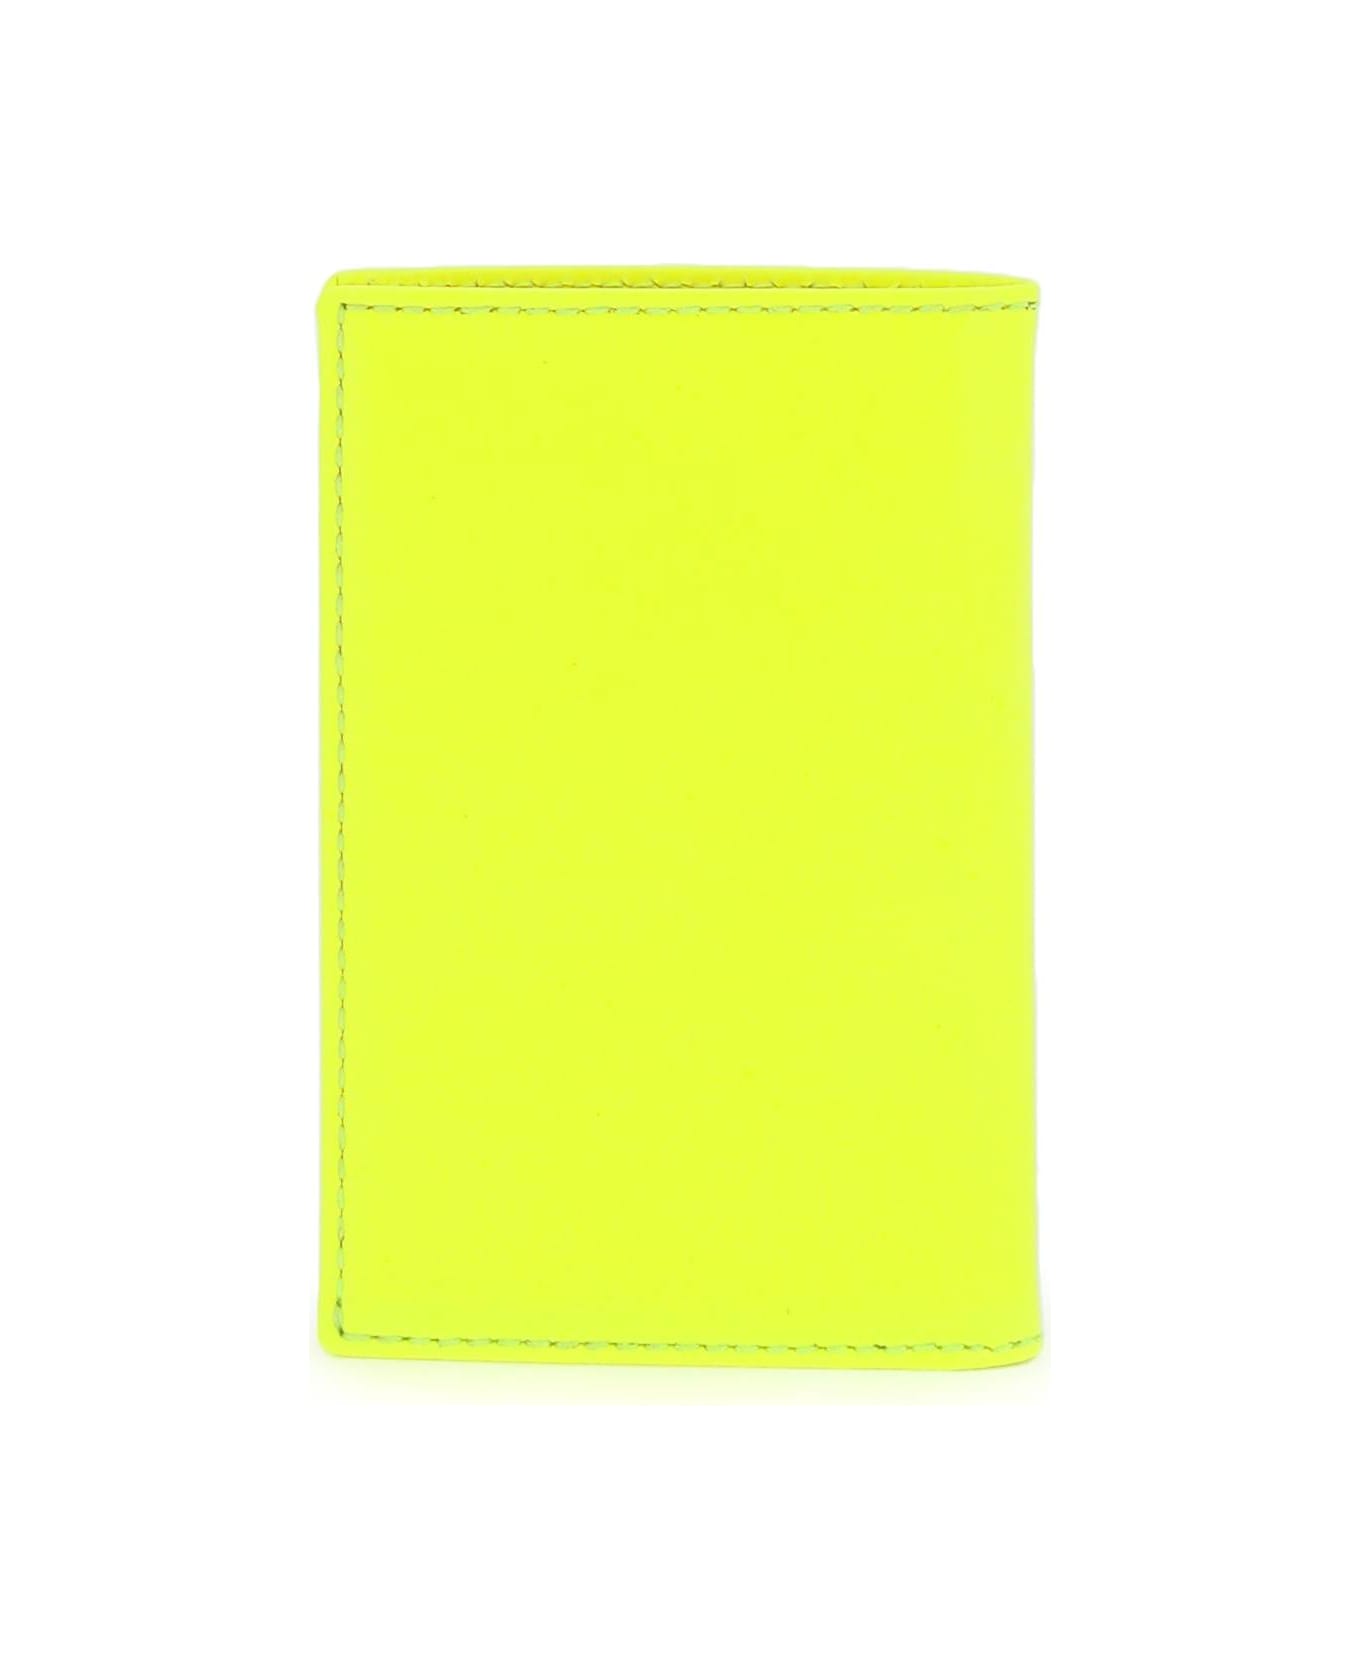 Comme des Garçons Wallet Super Fluo Bi-fold Wallet - YELLOW (Orange) 財布